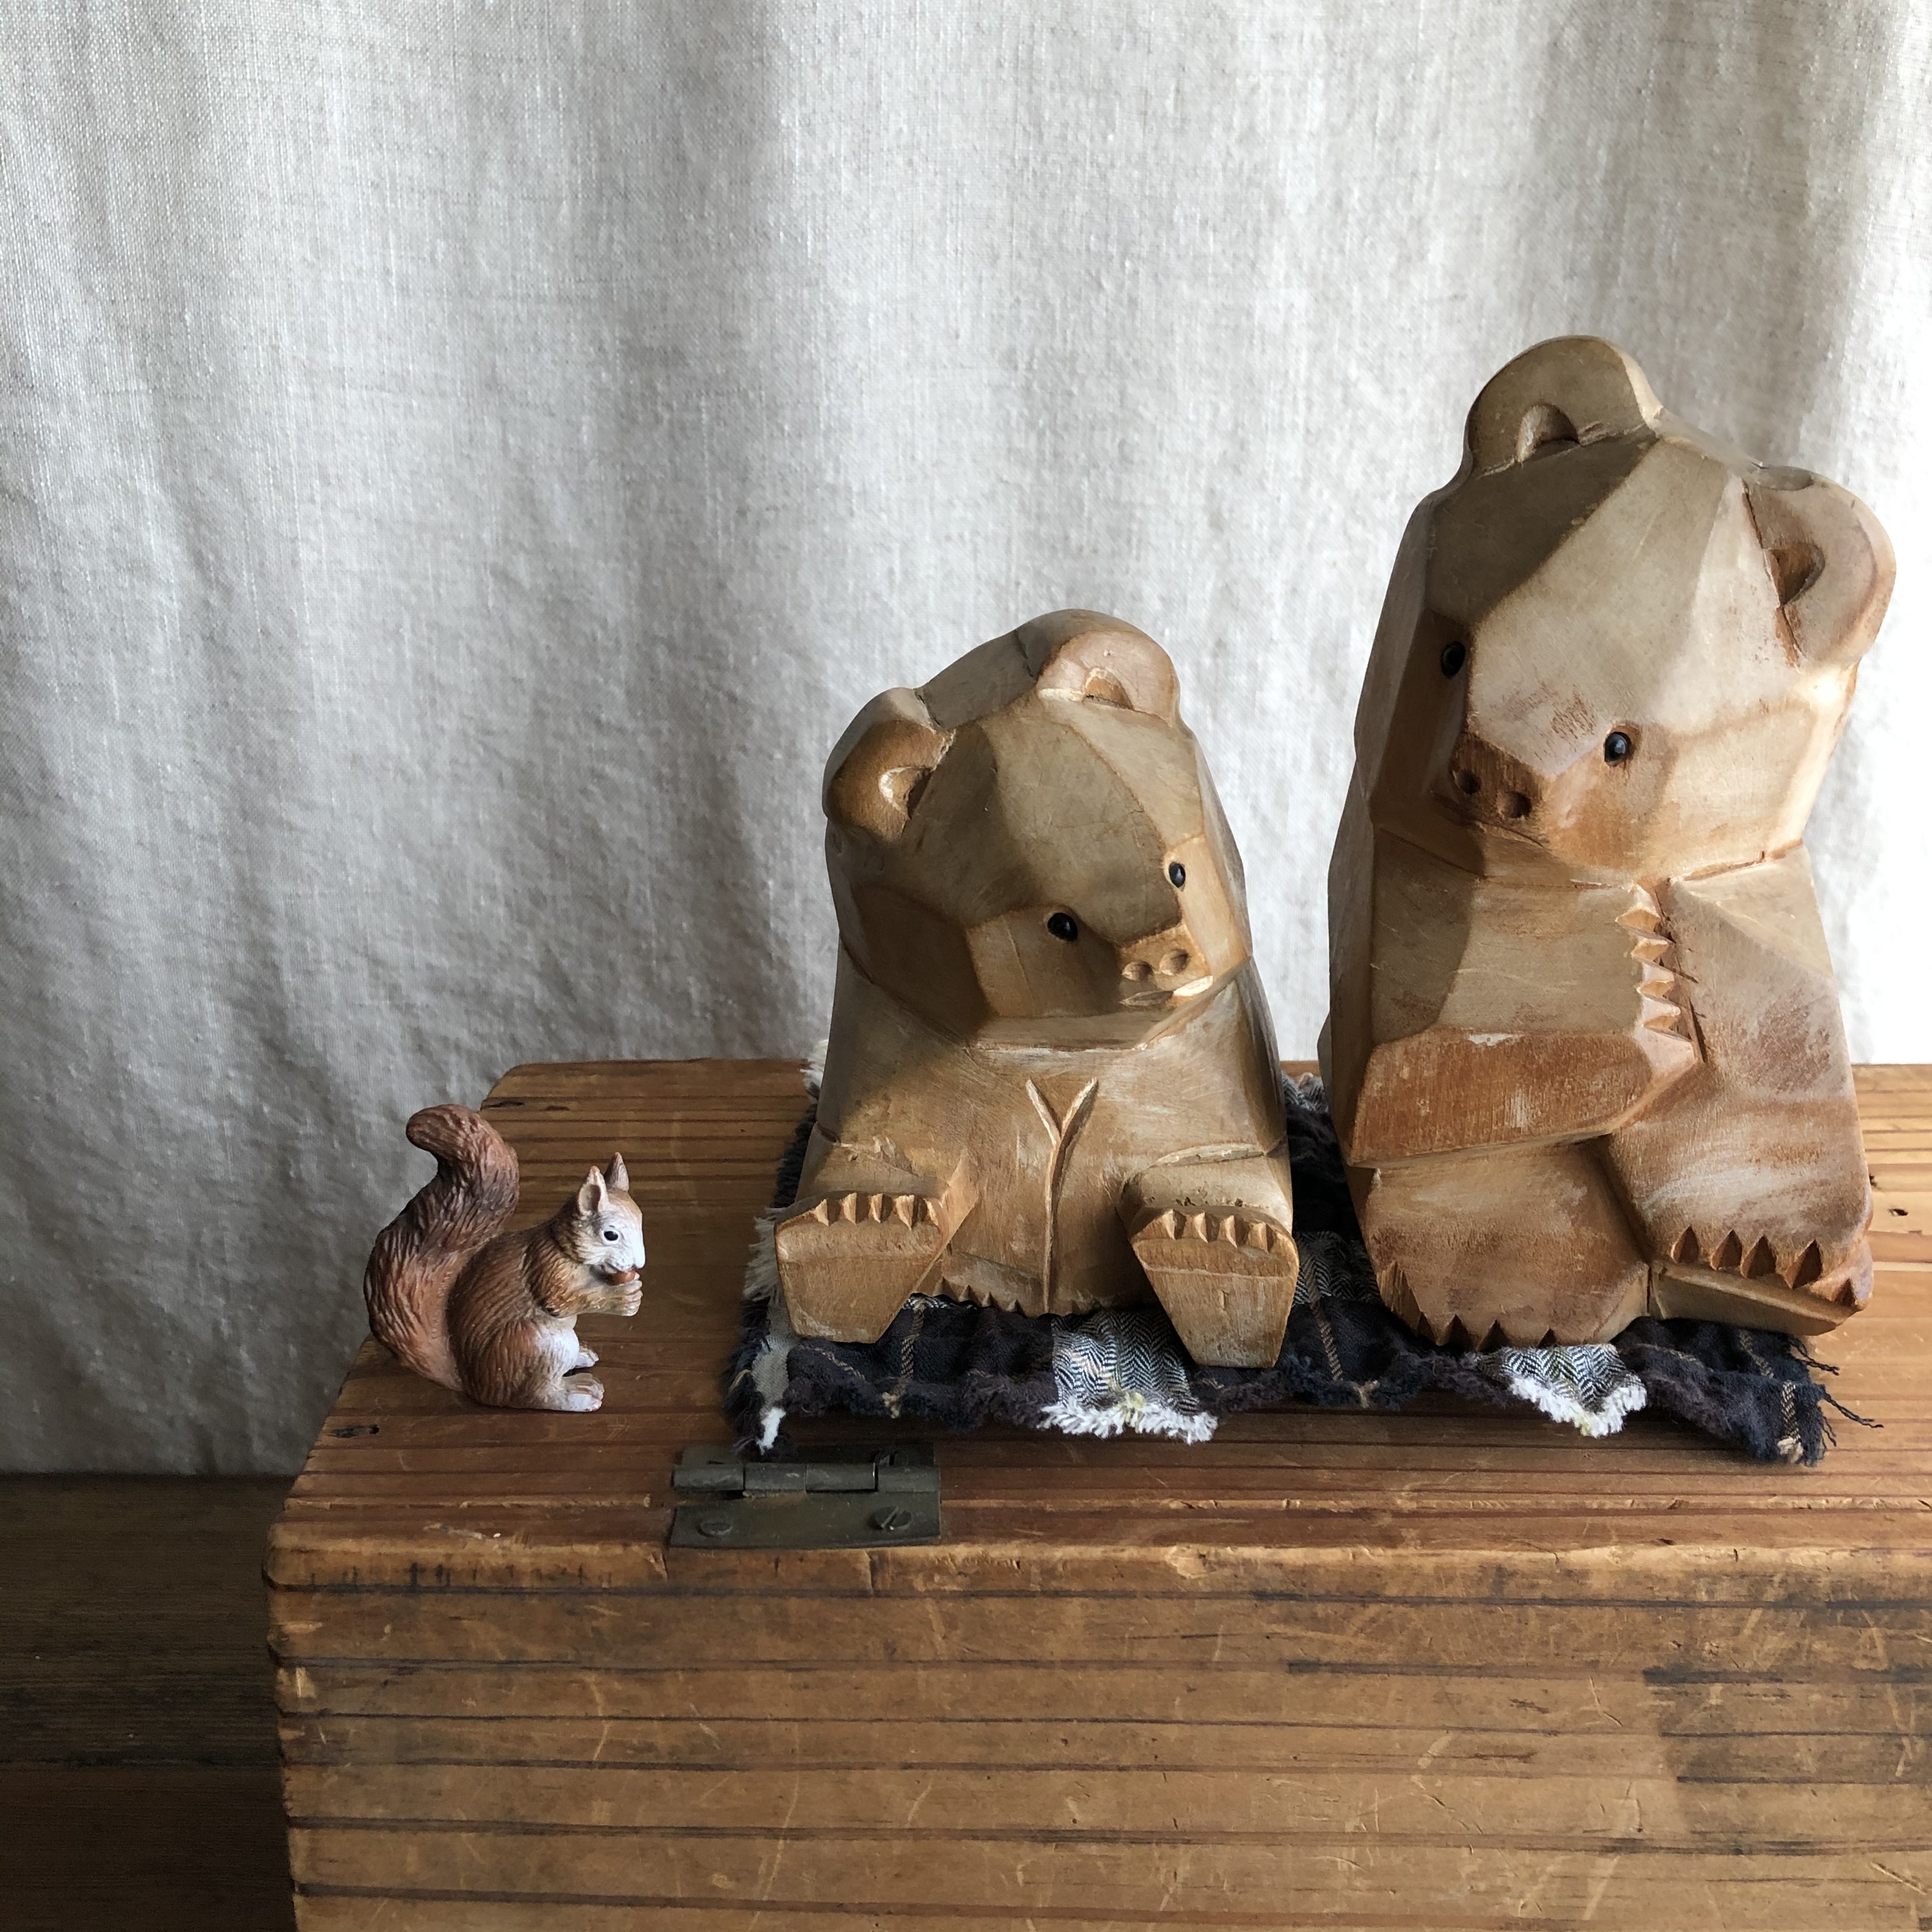 木彫り 可愛い 熊ちゃん親子 古雑貨どんぐり